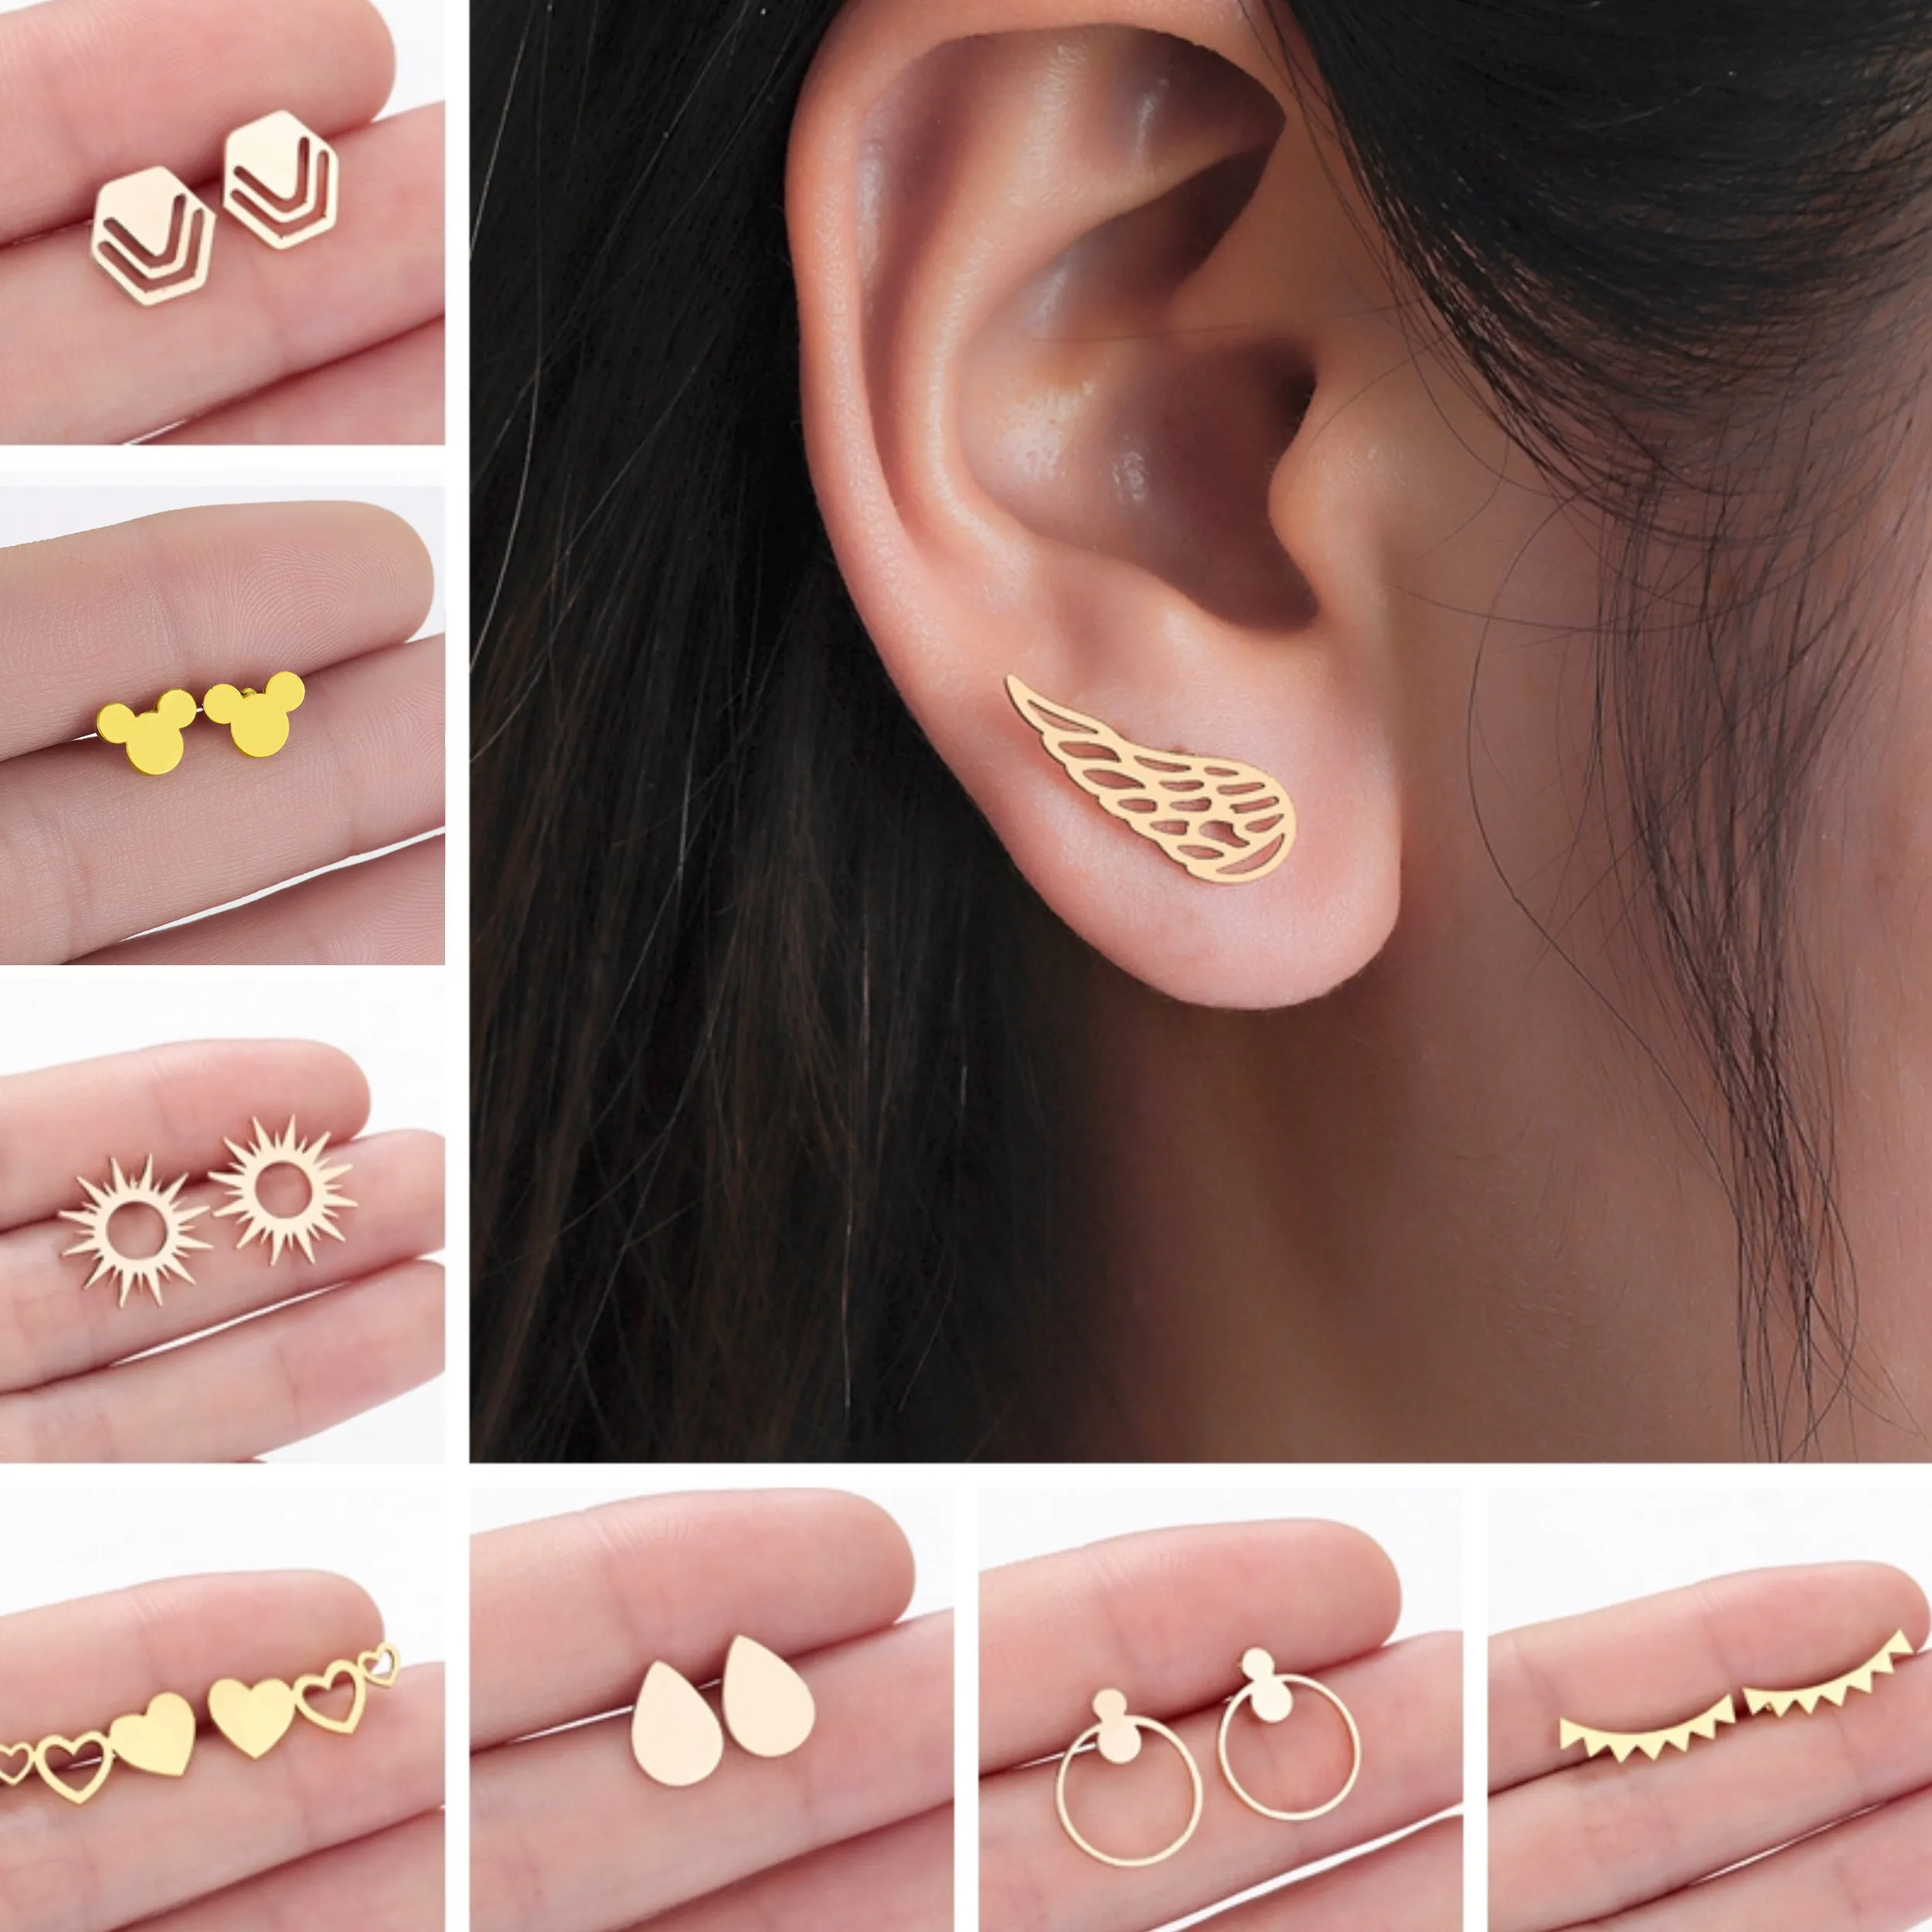 

Stainless Steel Earrings Women Hexagon Wings Water Drop Geometric Stud Earrings Vintage Fashion Jewelry Ladies Gift Gold Earring